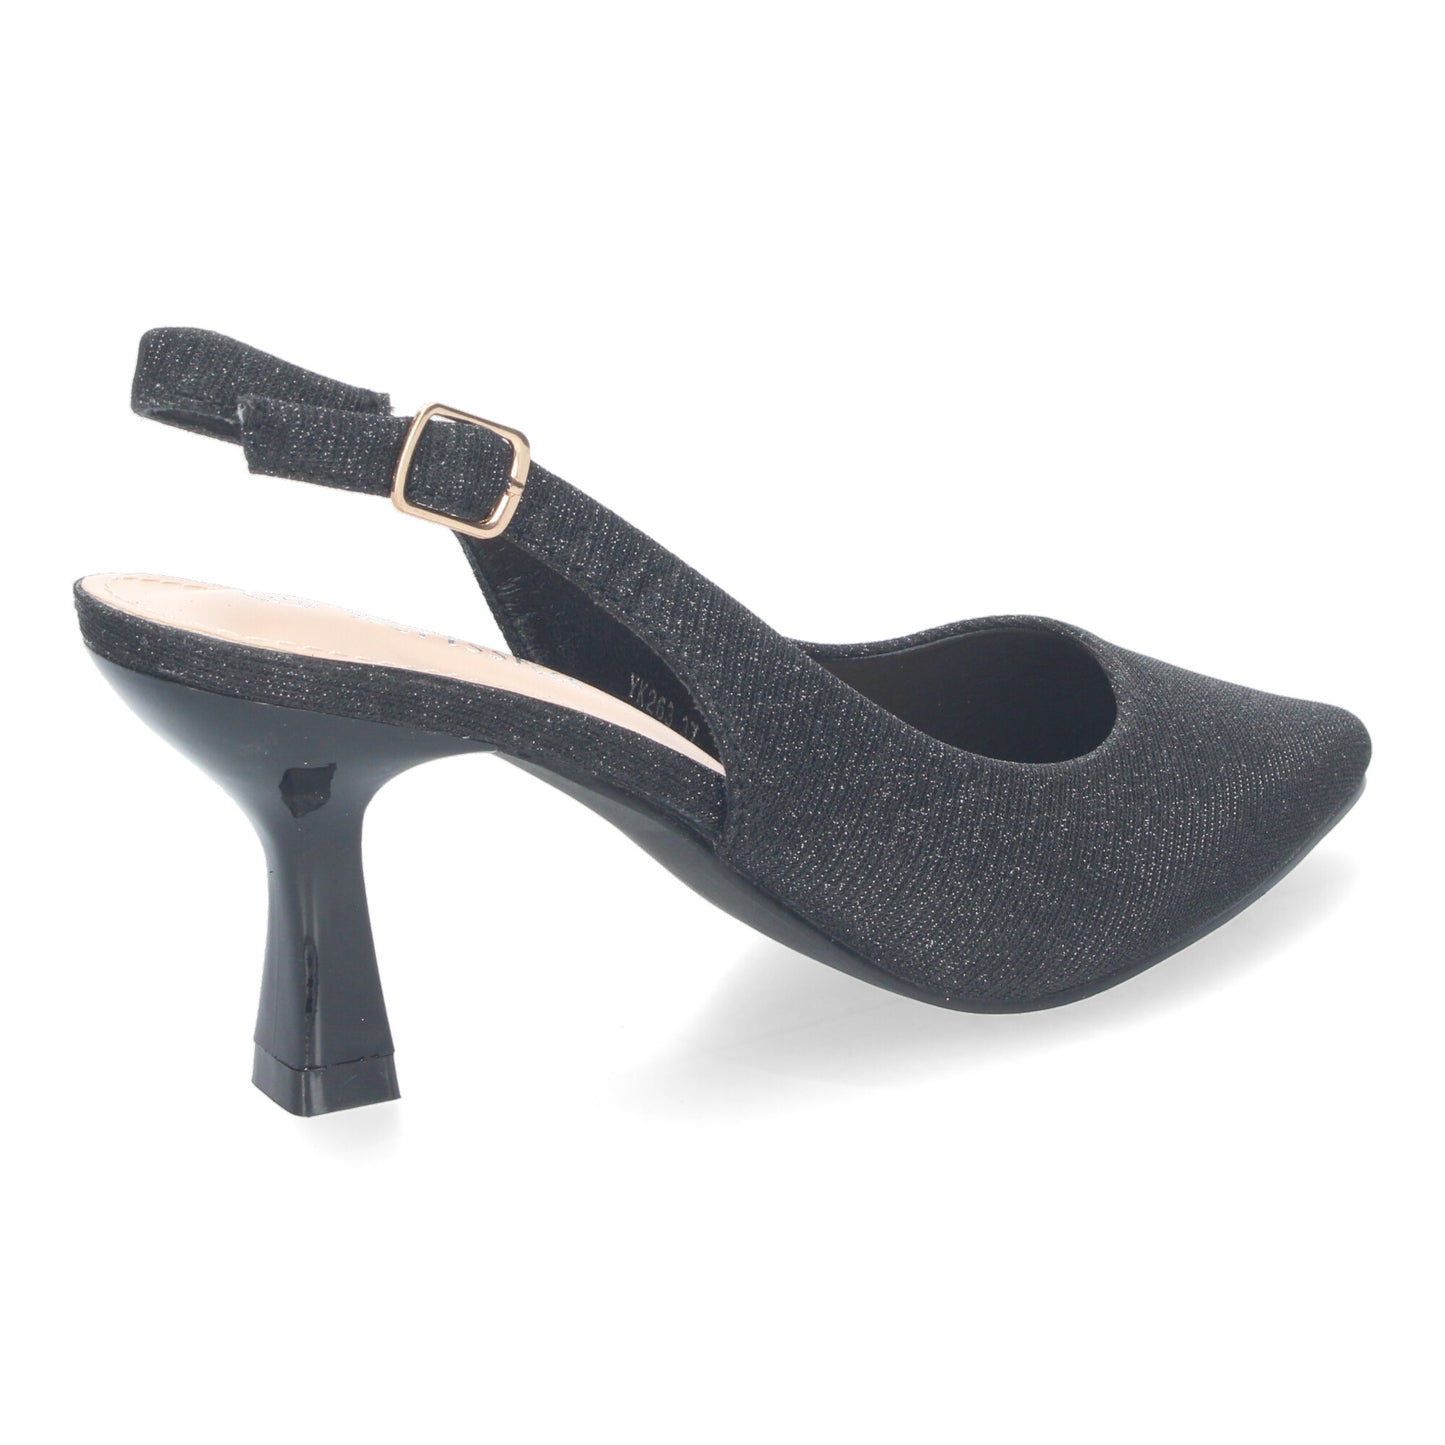 Zapato de Salón para Mujer  Diseño Elegante con Tacón  Abierto por el Talón  Puntera Fina y Cierre de Hebilla Ajustable.